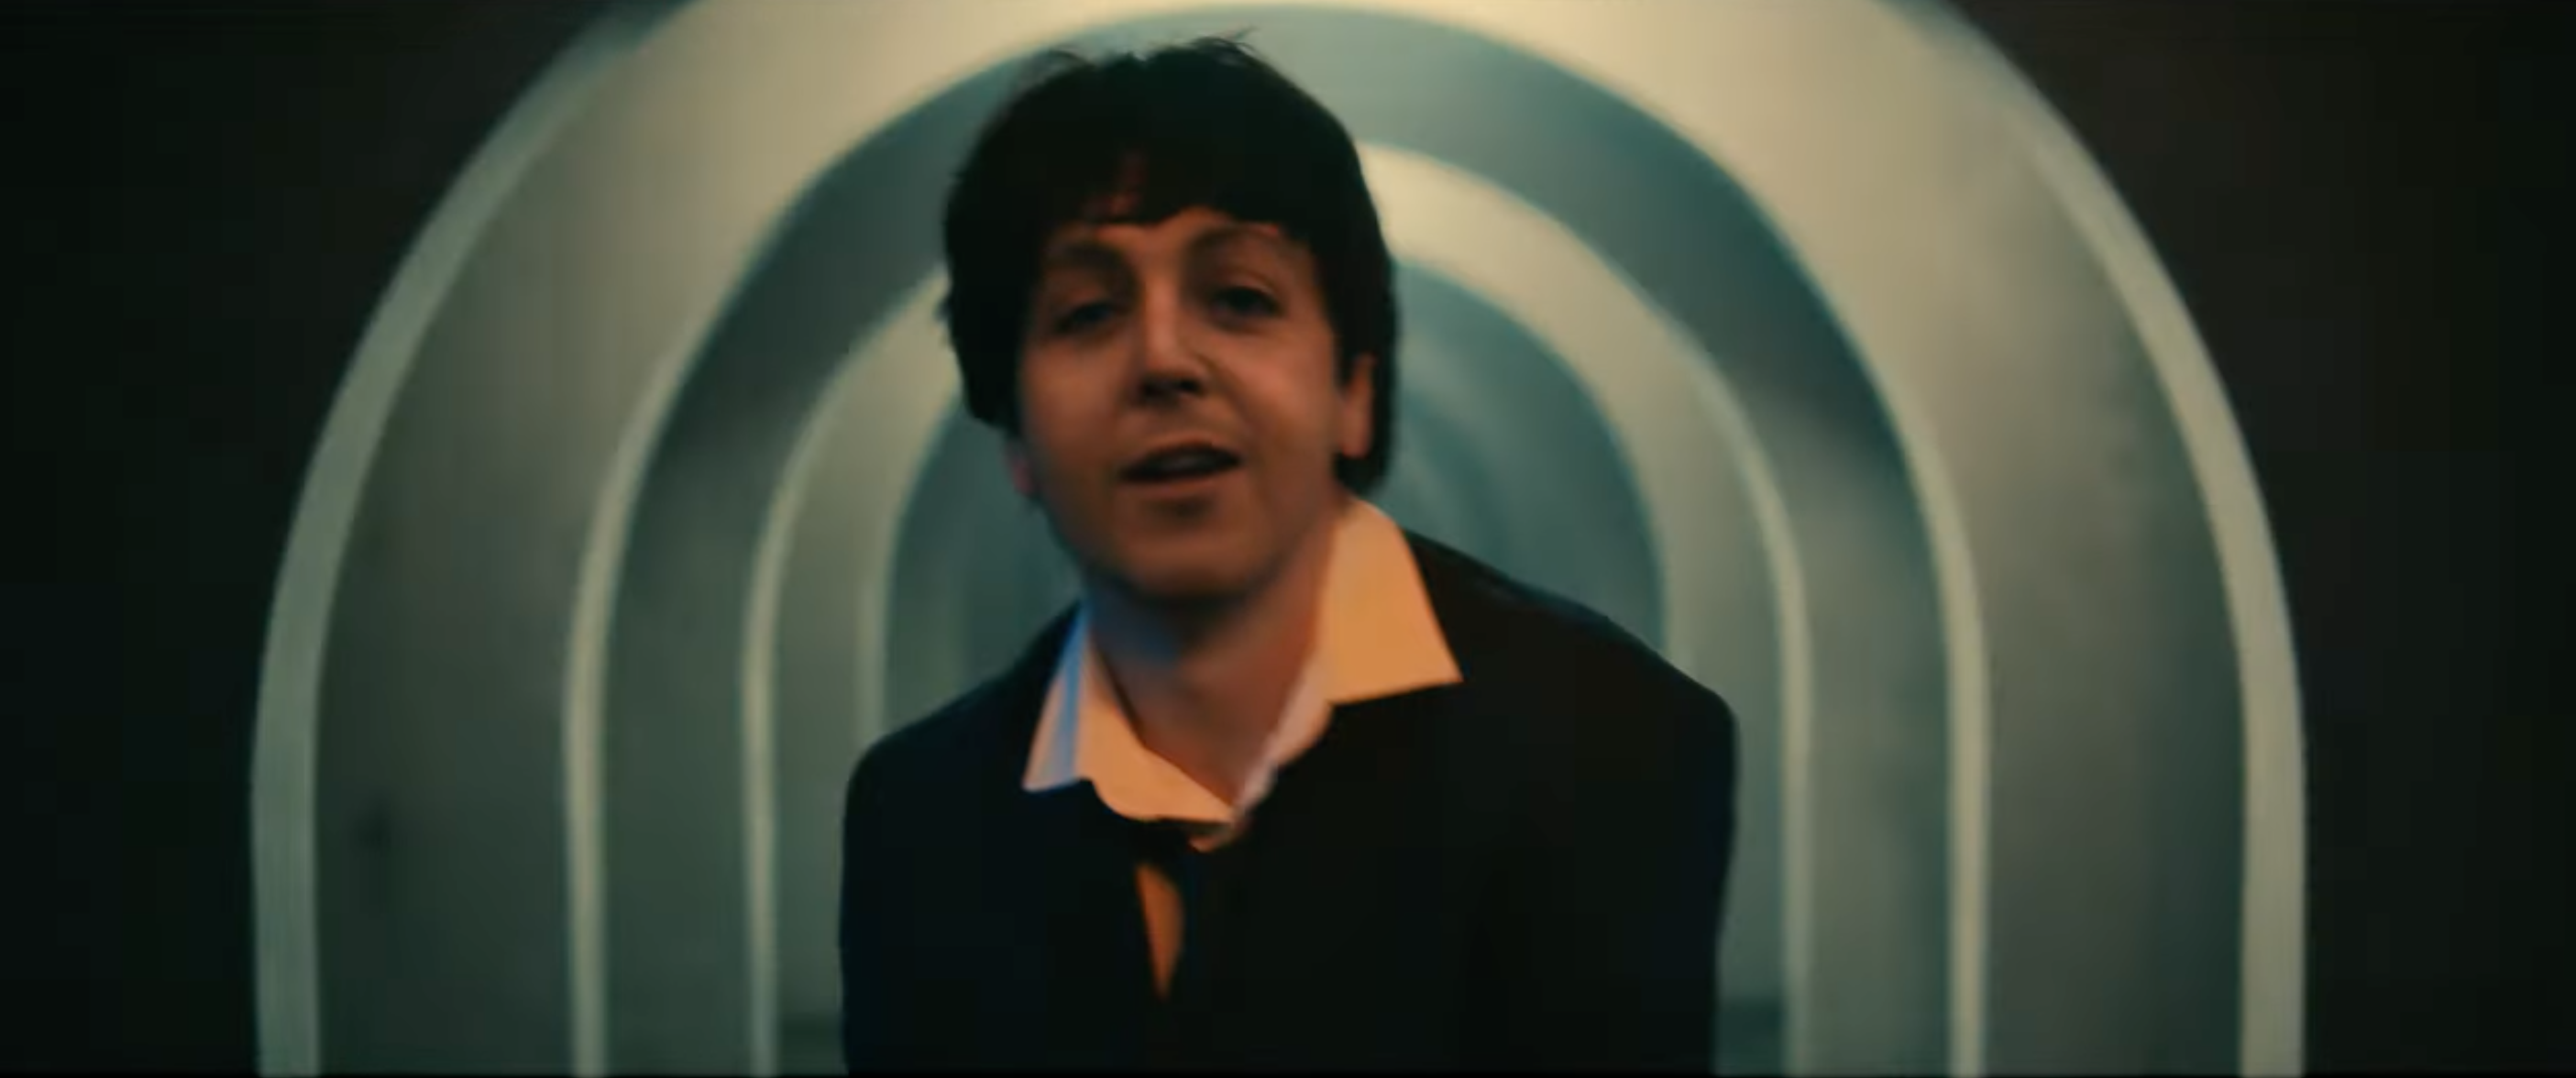 Paul McCartney 'rejuvenece' gracias a Beck en el video de "Find My Way"